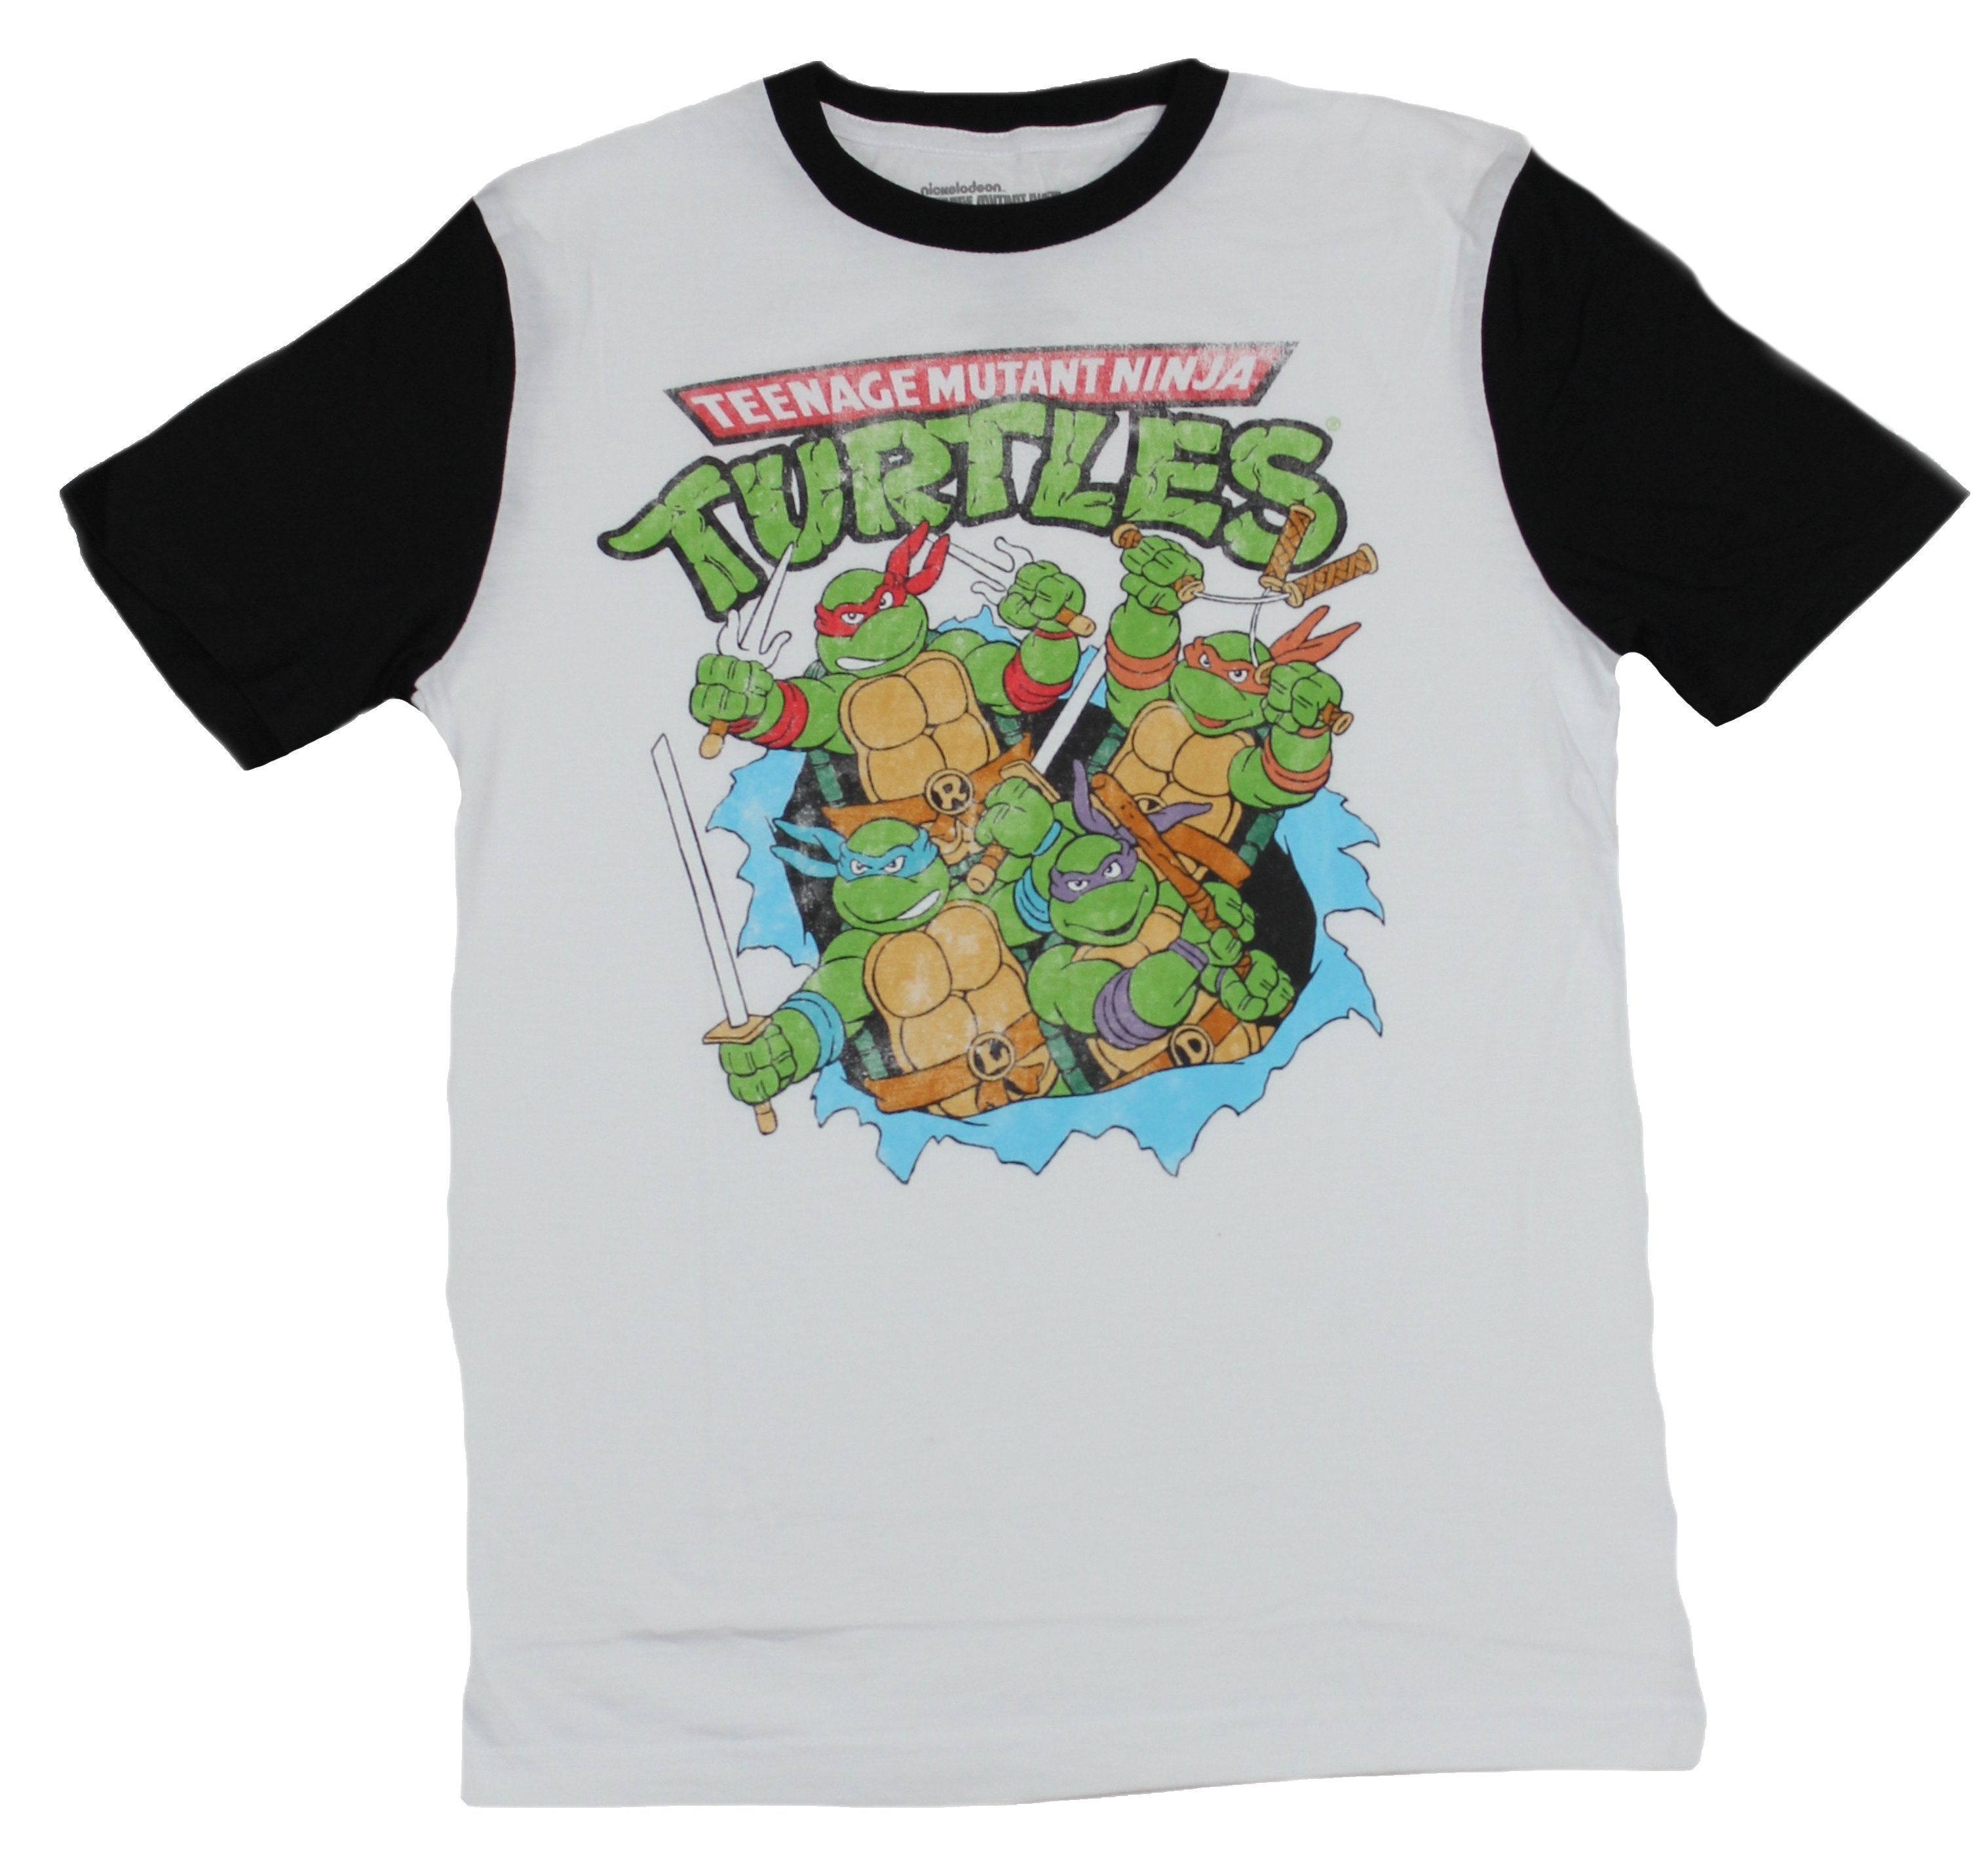  Nickelodeon Ninja Turtles Shirt With Mask and Raphael